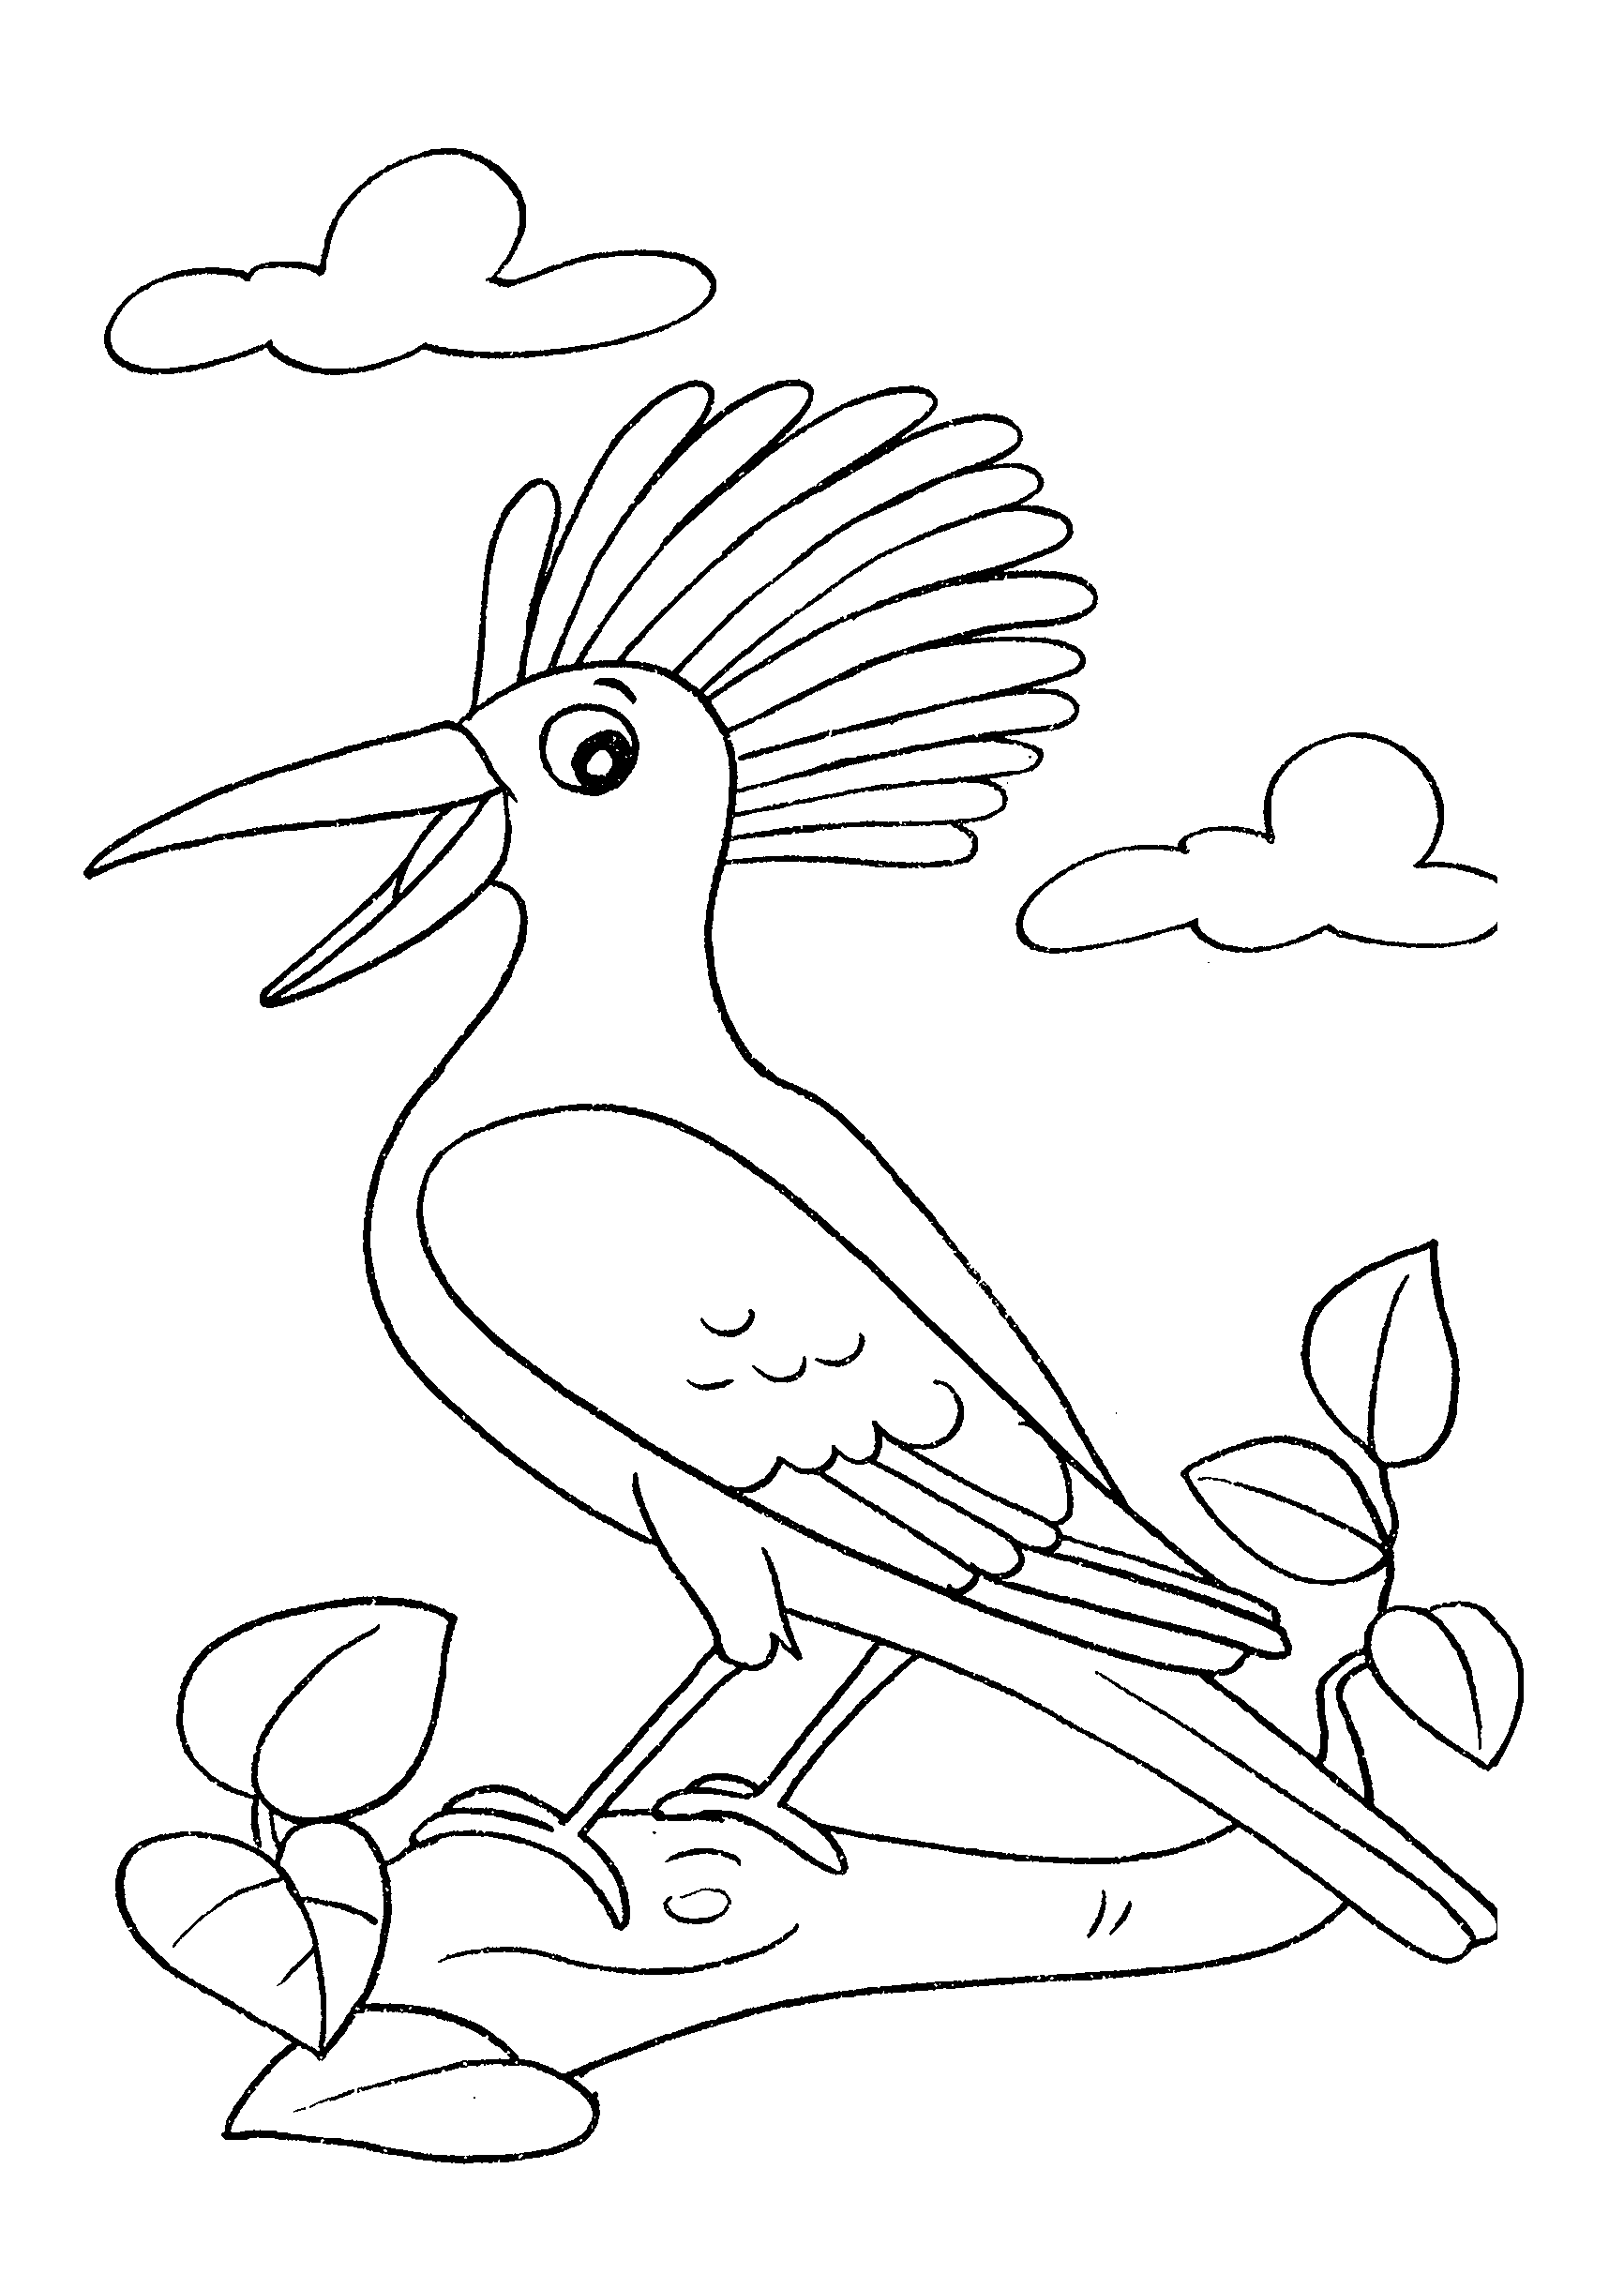 Desenho de ave